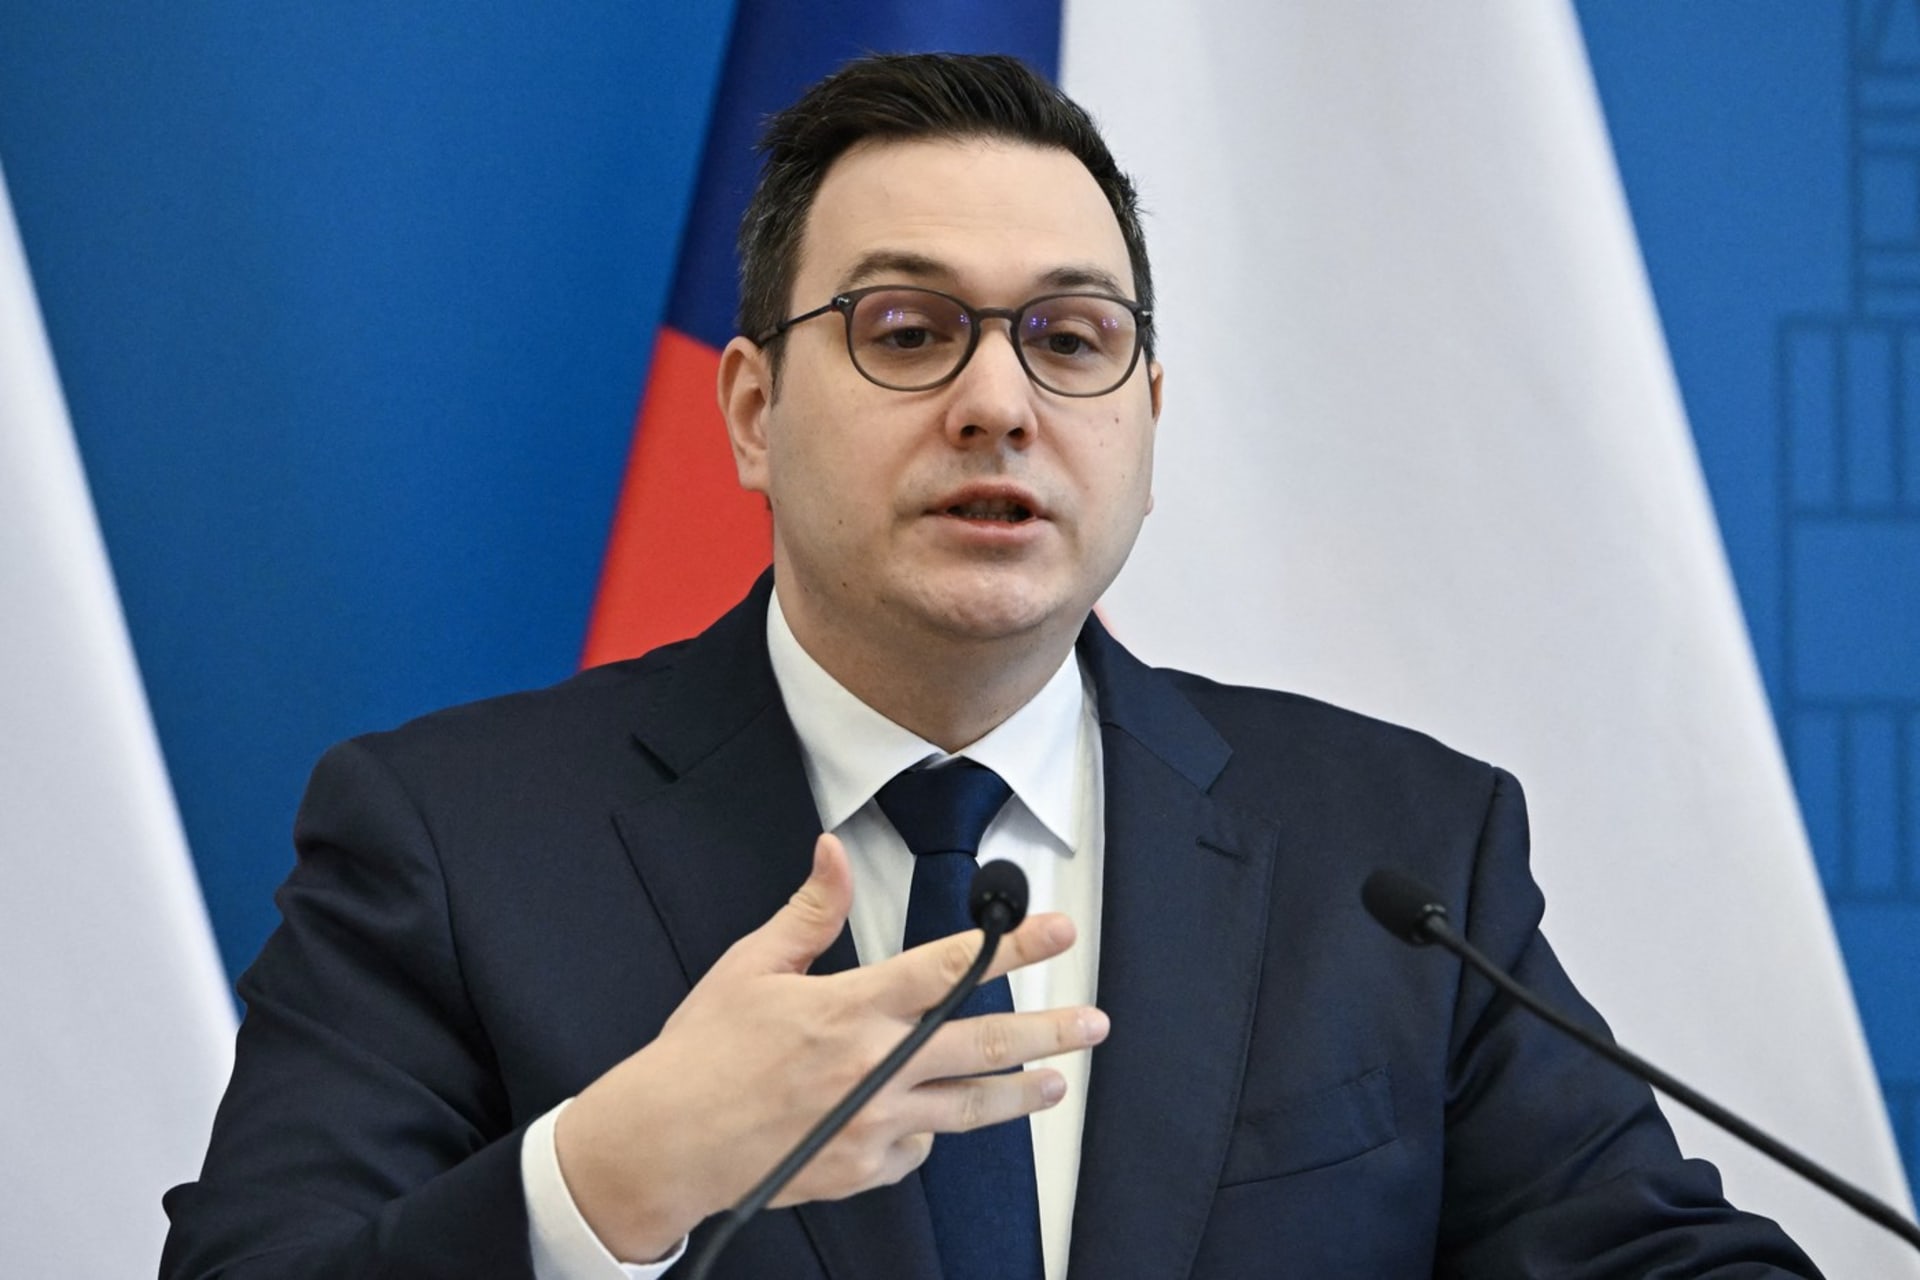 Ministr zahraničních věcí Jan Lipavský (Piráti)